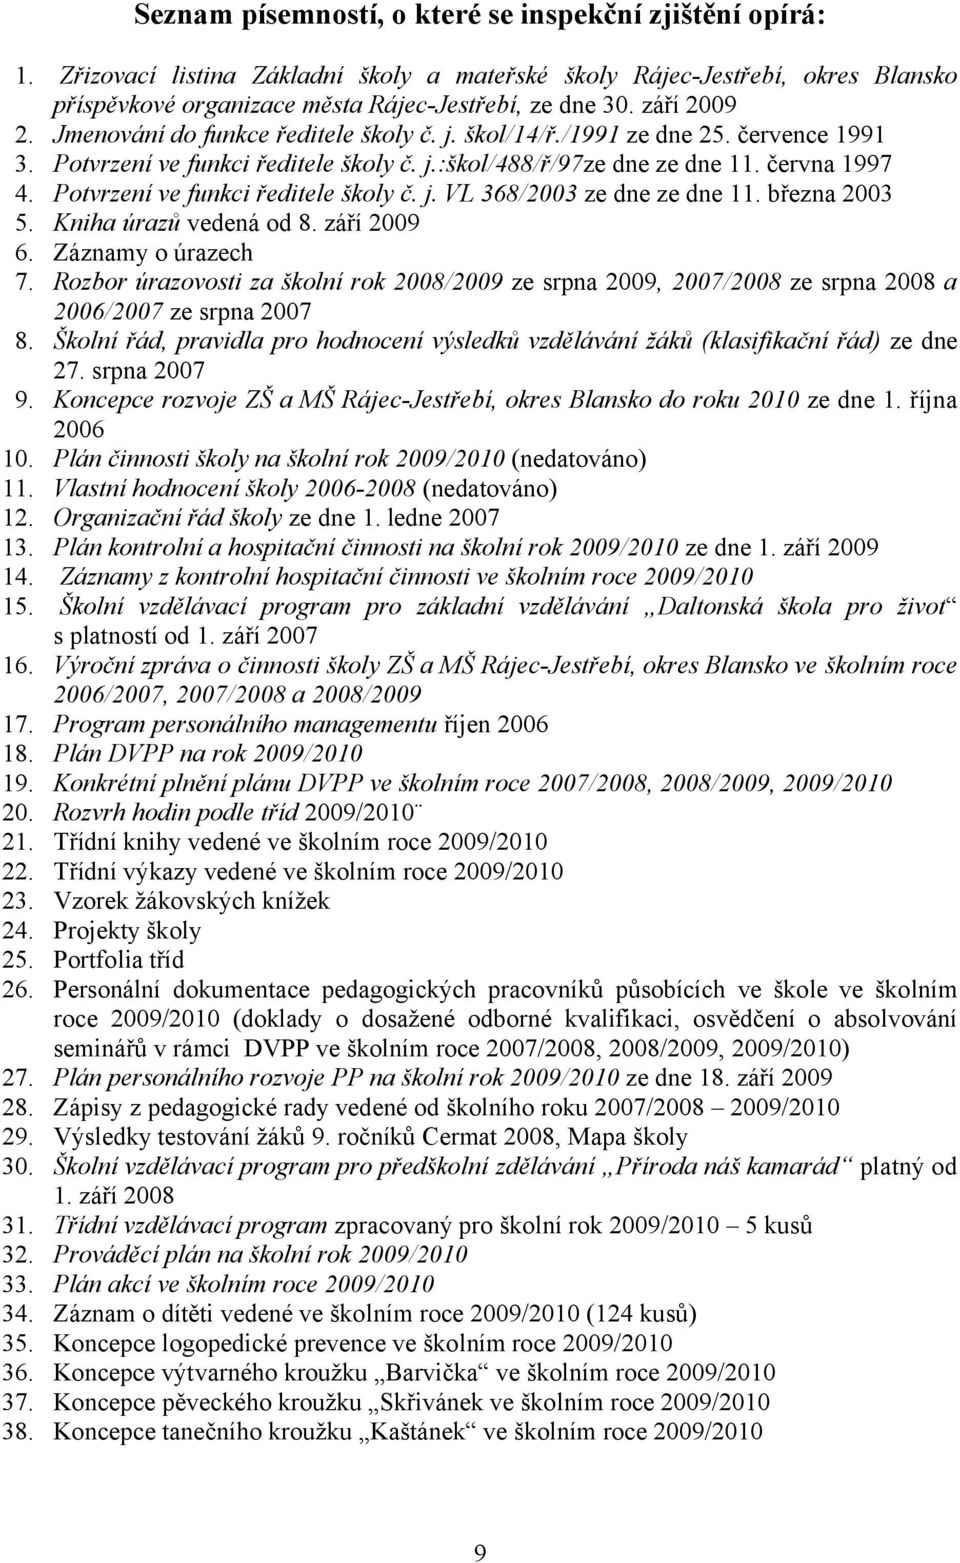 Potvrzení ve funkci ředitele školy č. j. VL 368/2003 ze dne ze dne 11. března 2003 5. Kniha úrazů vedená od 8. září 2009 6. Záznamy o úrazech 7.